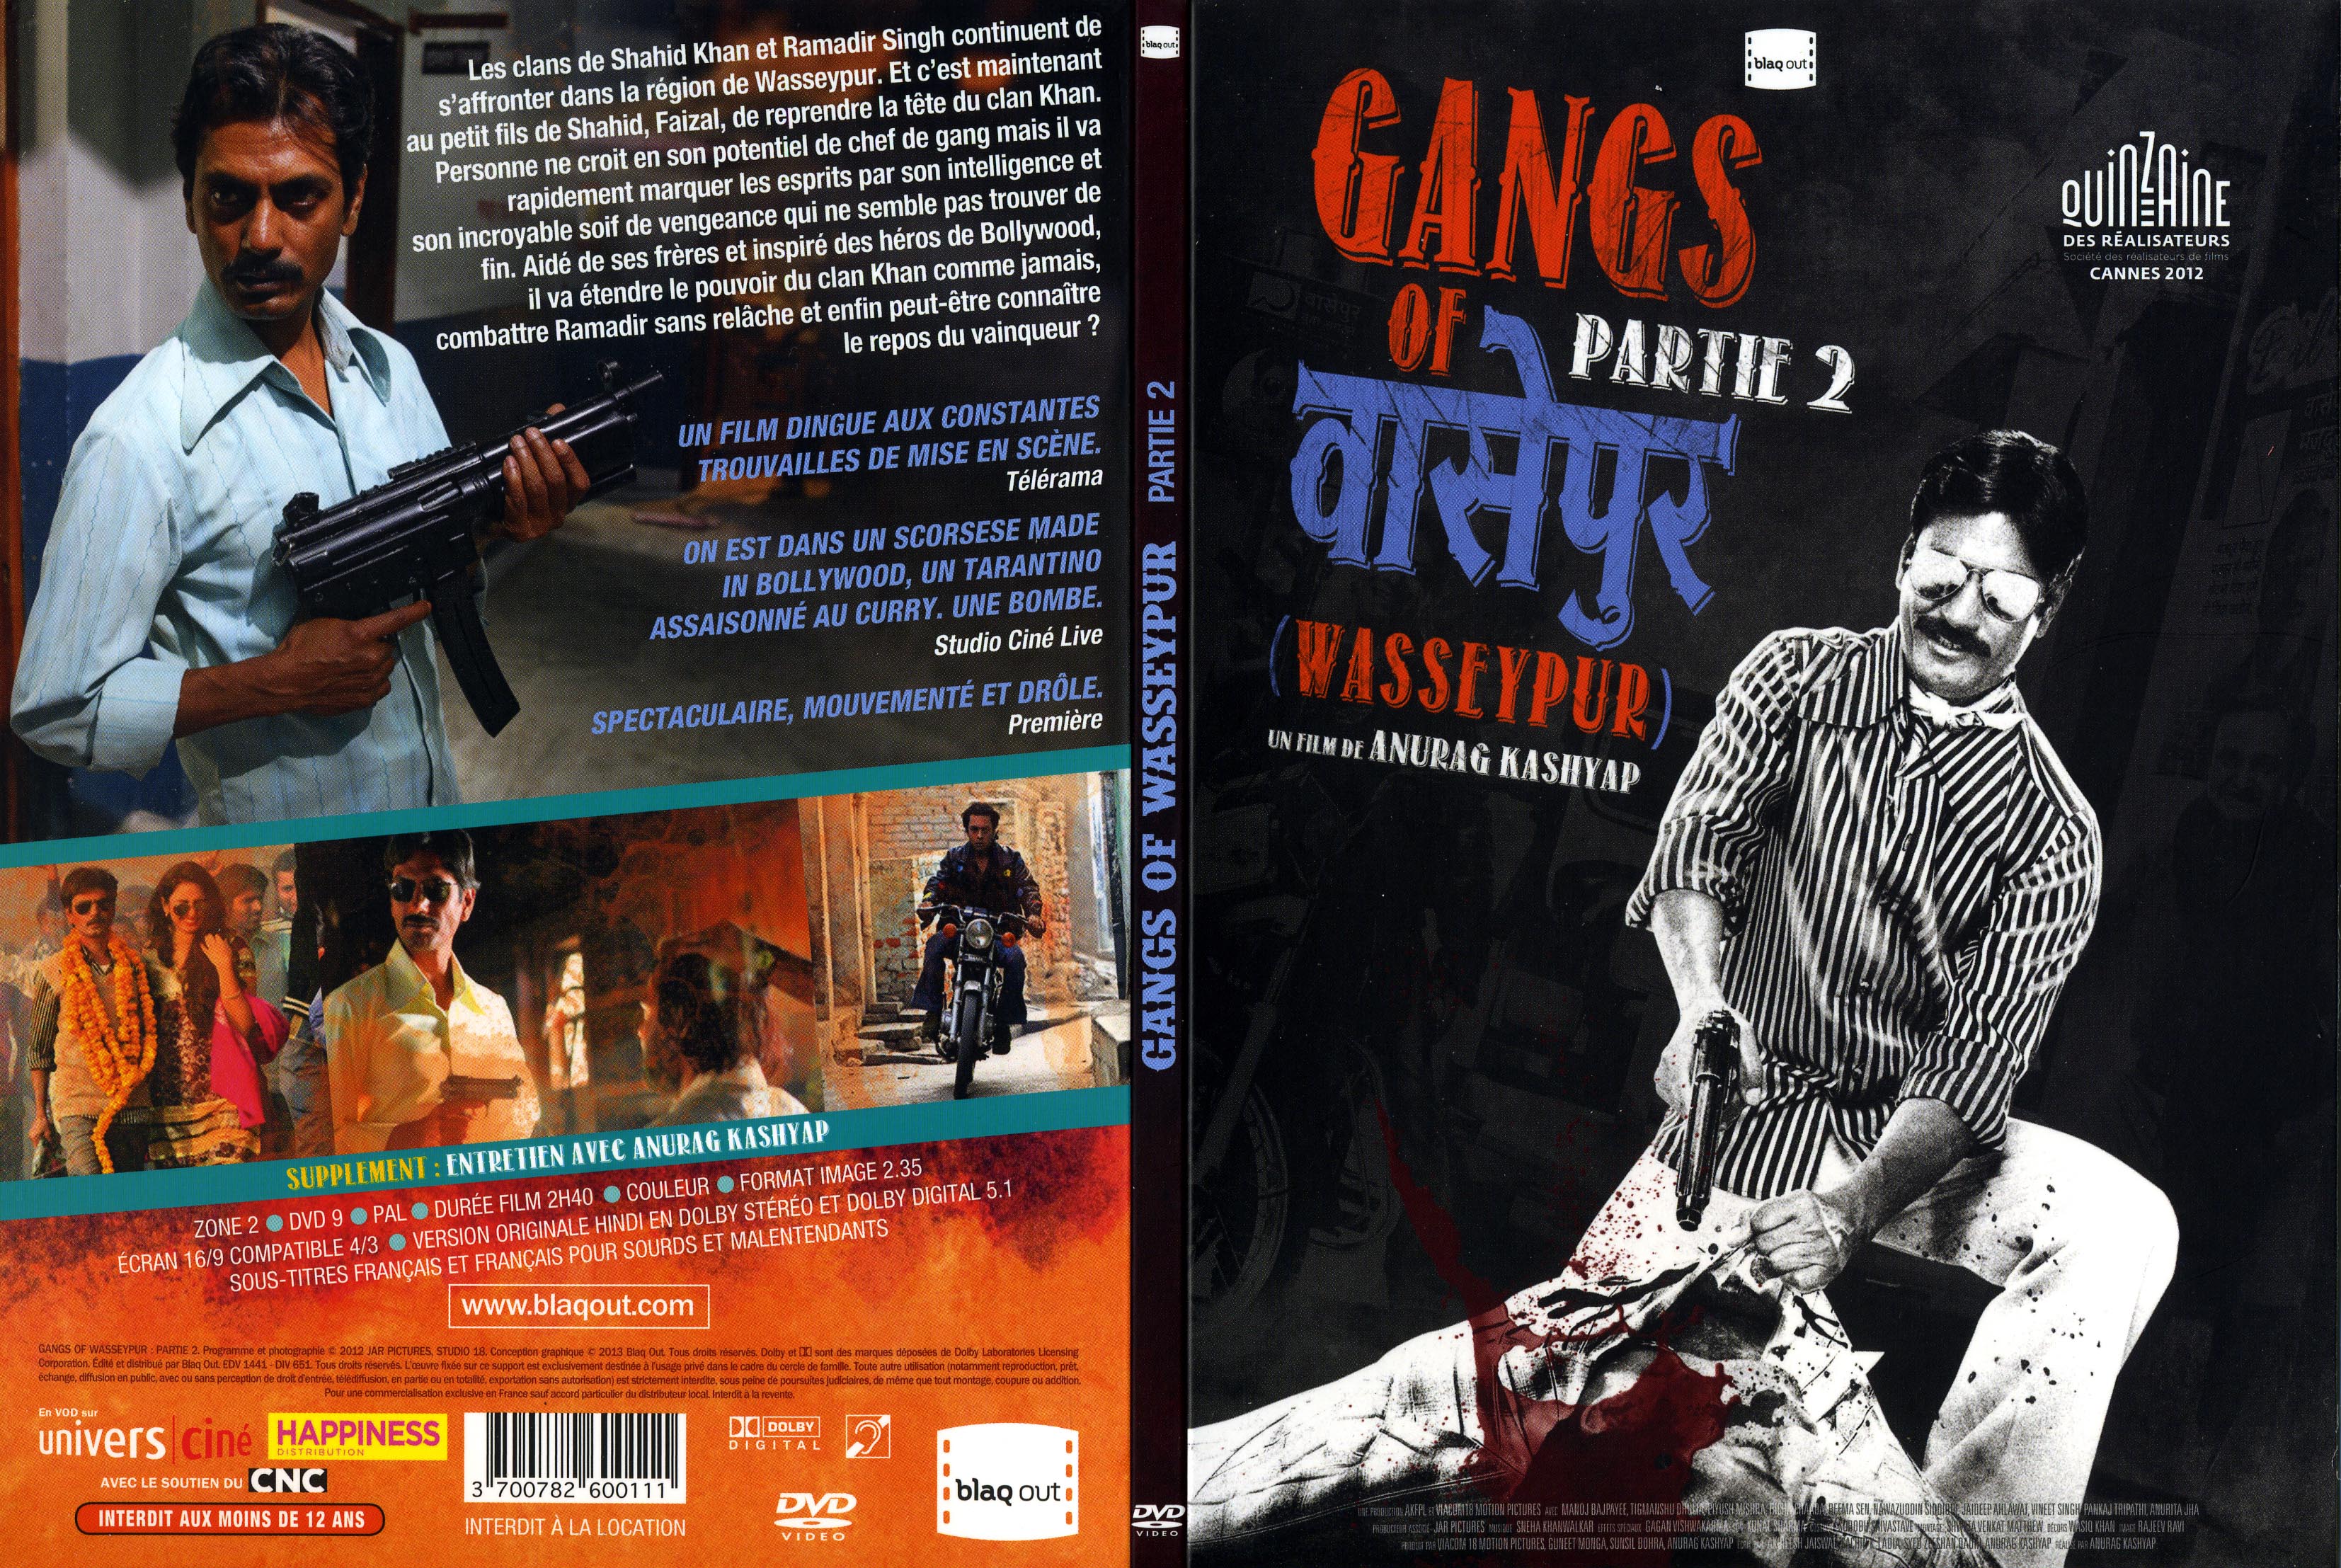 Jaquette DVD Gangs of Wasseypur Part 2